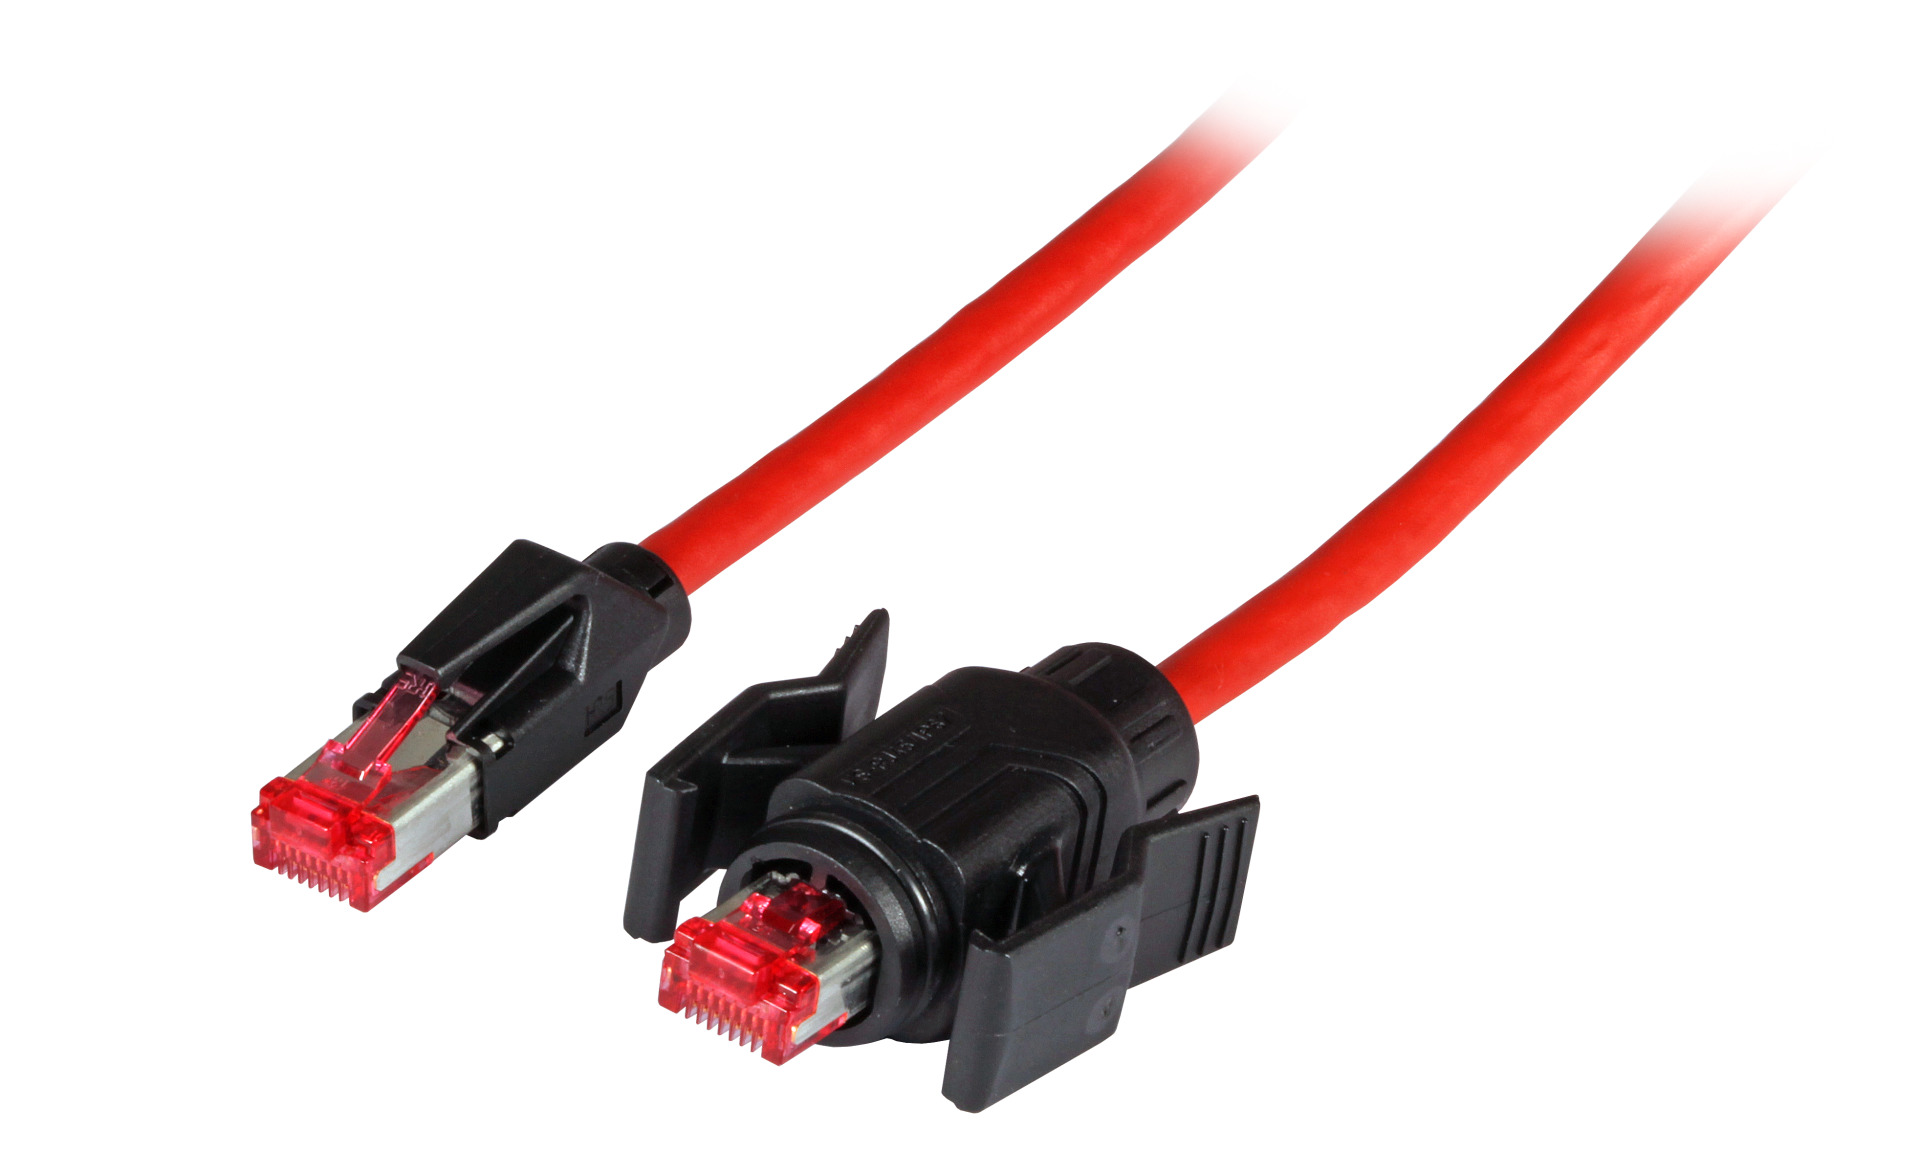 RJ45 Patch cable S/FTP, Cat.6A, IP67/TM21 / TM21, PUR, for 53730.1V2, 15m